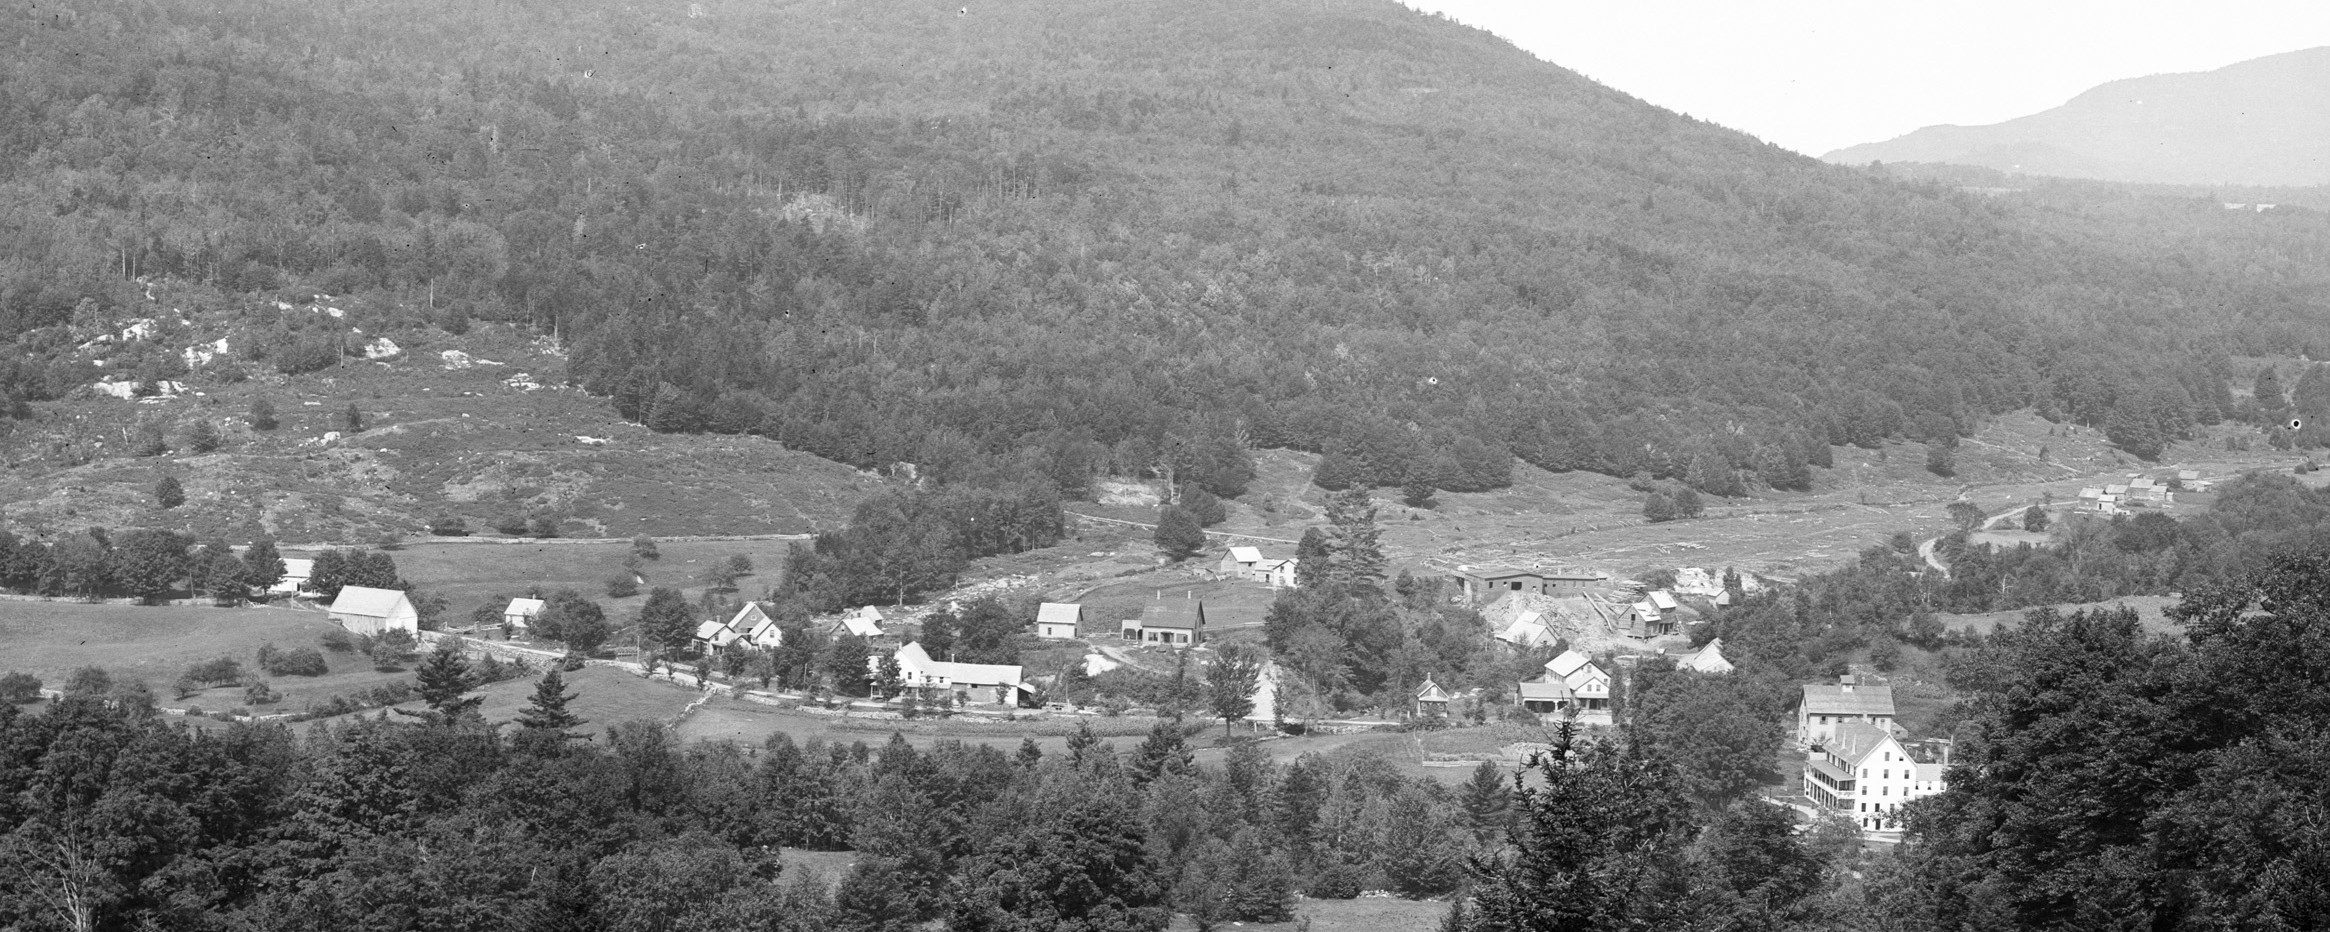 Birdseye view of Tyson, Vermont